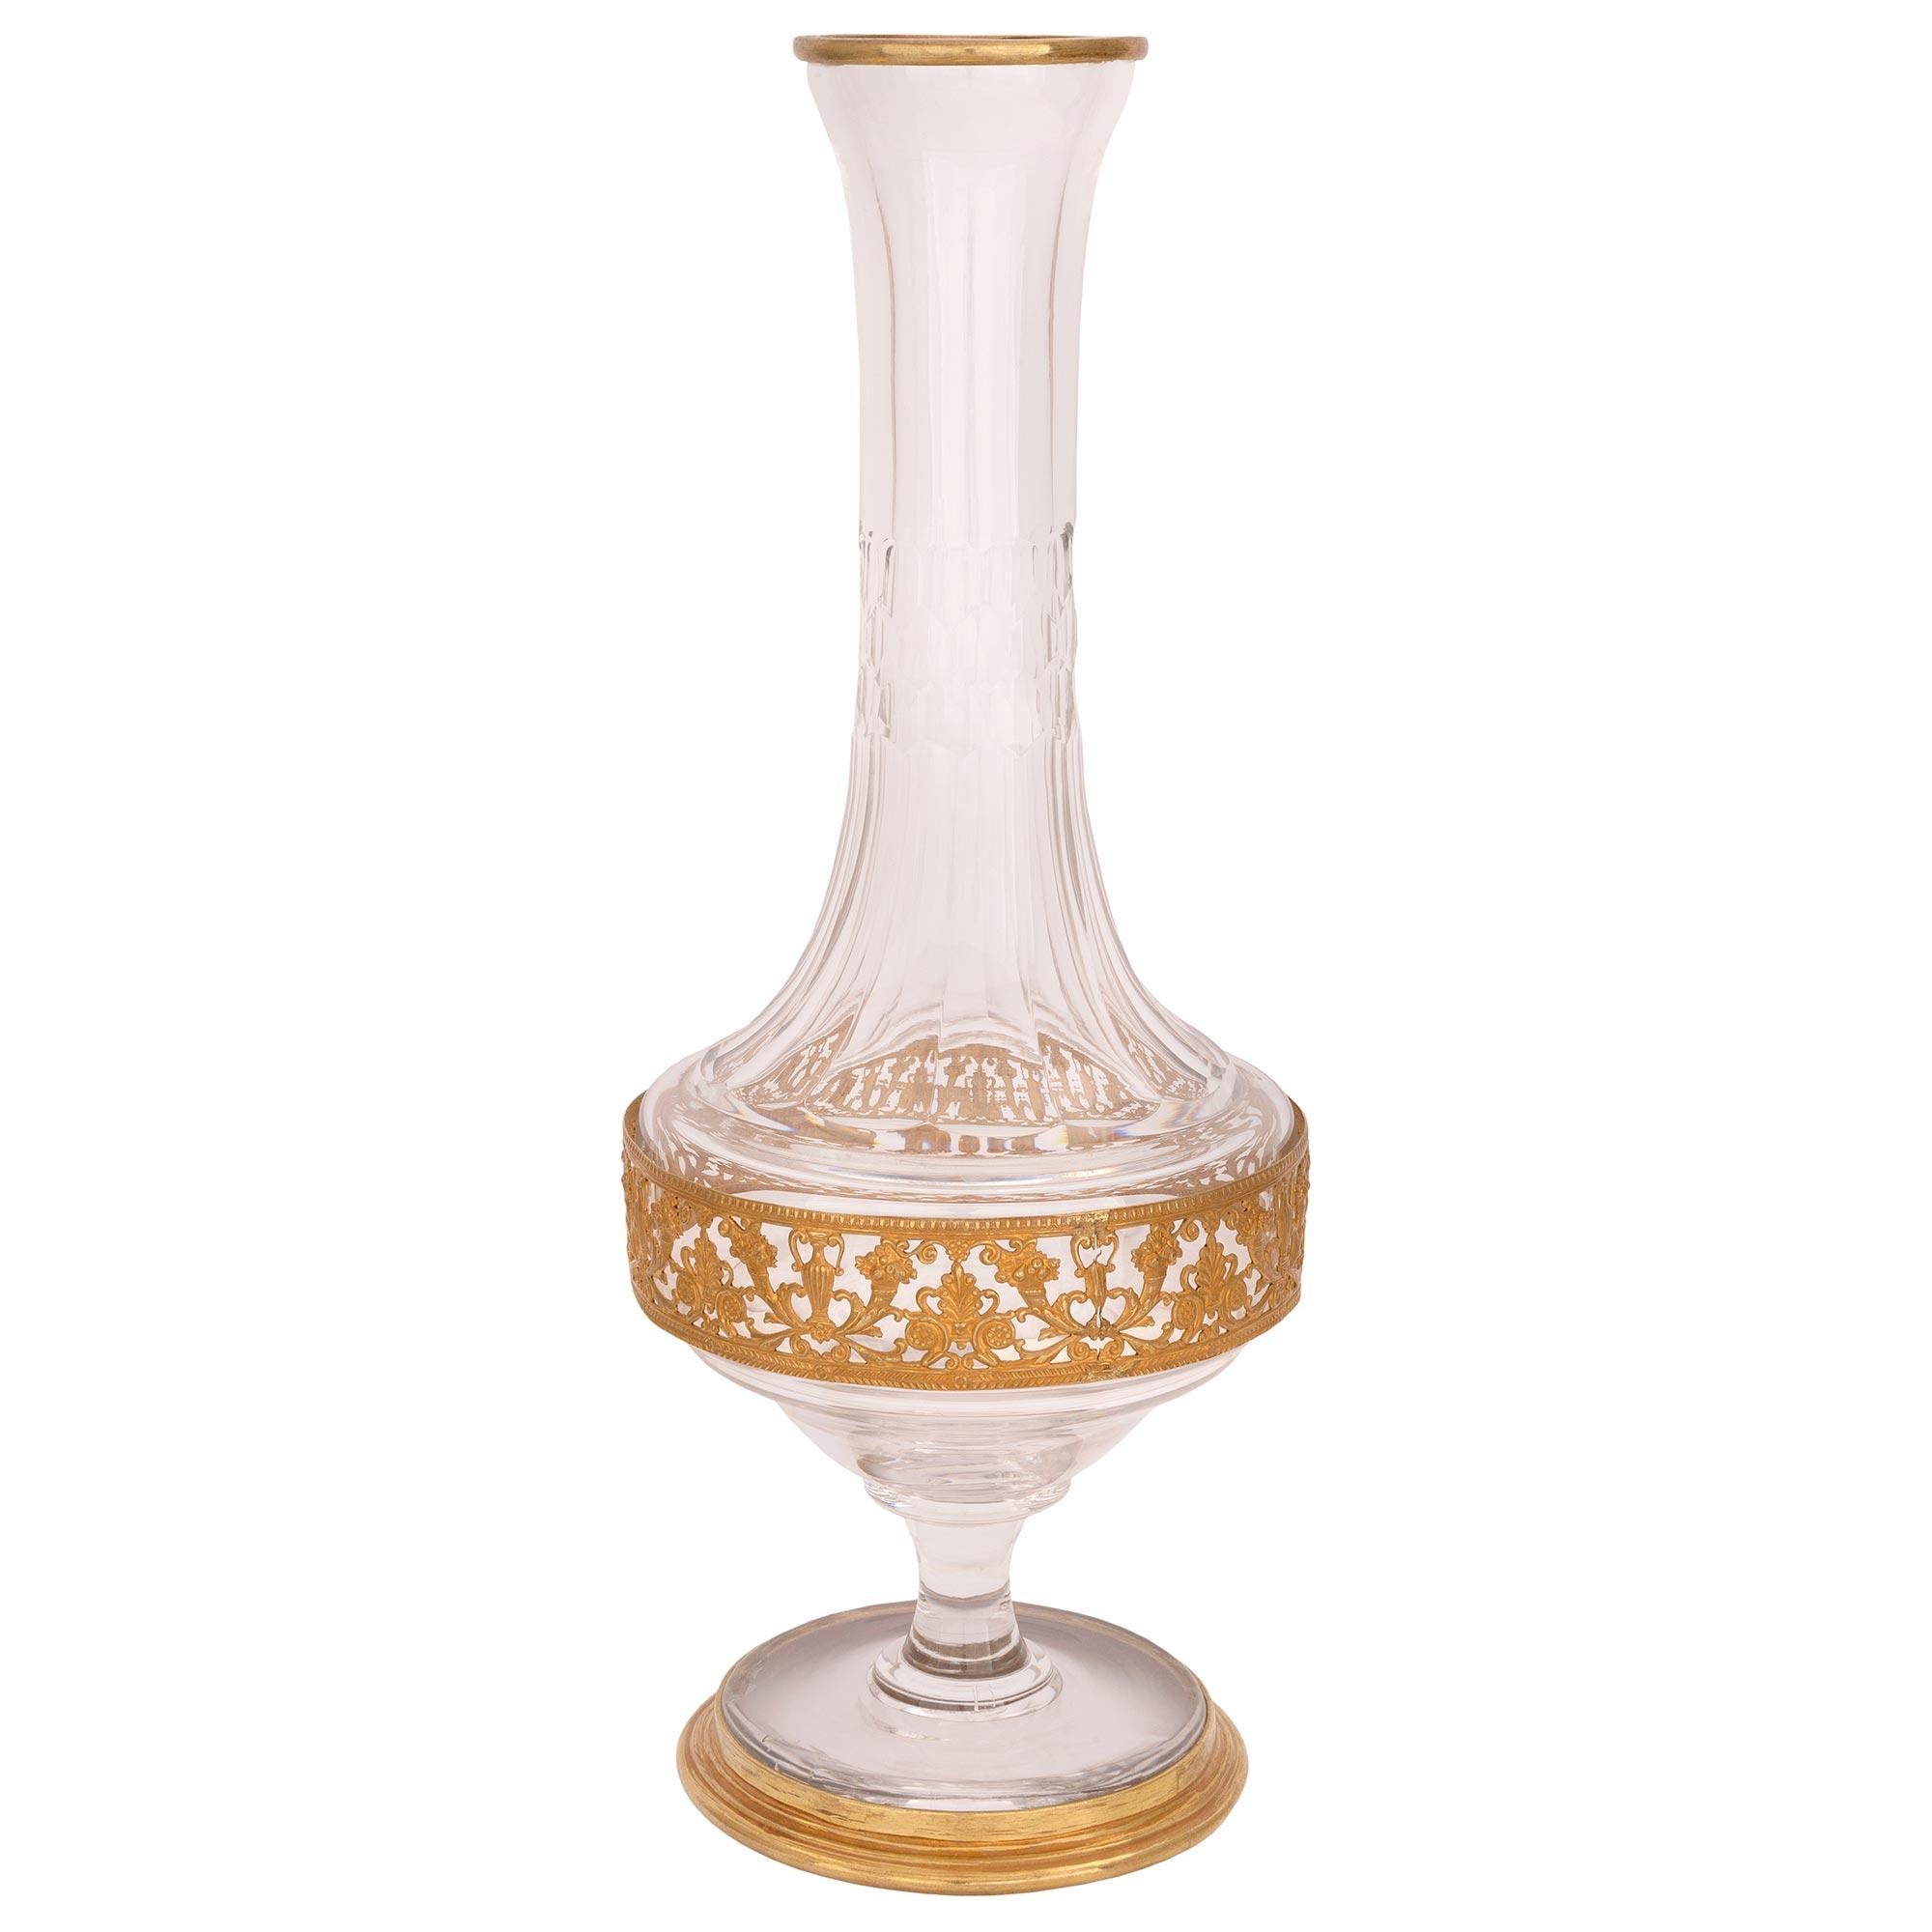 Ein exquisites und sehr elegantes Paar französischer Vasen aus Baccarat-Kristall und Ormolu des 19. Jahrhunderts. Jede Vase steht auf einem runden Sockel mit einem fein gesprenkelten, umlaufenden Ormolu-Band. Über den zierlichen, sockelförmigen